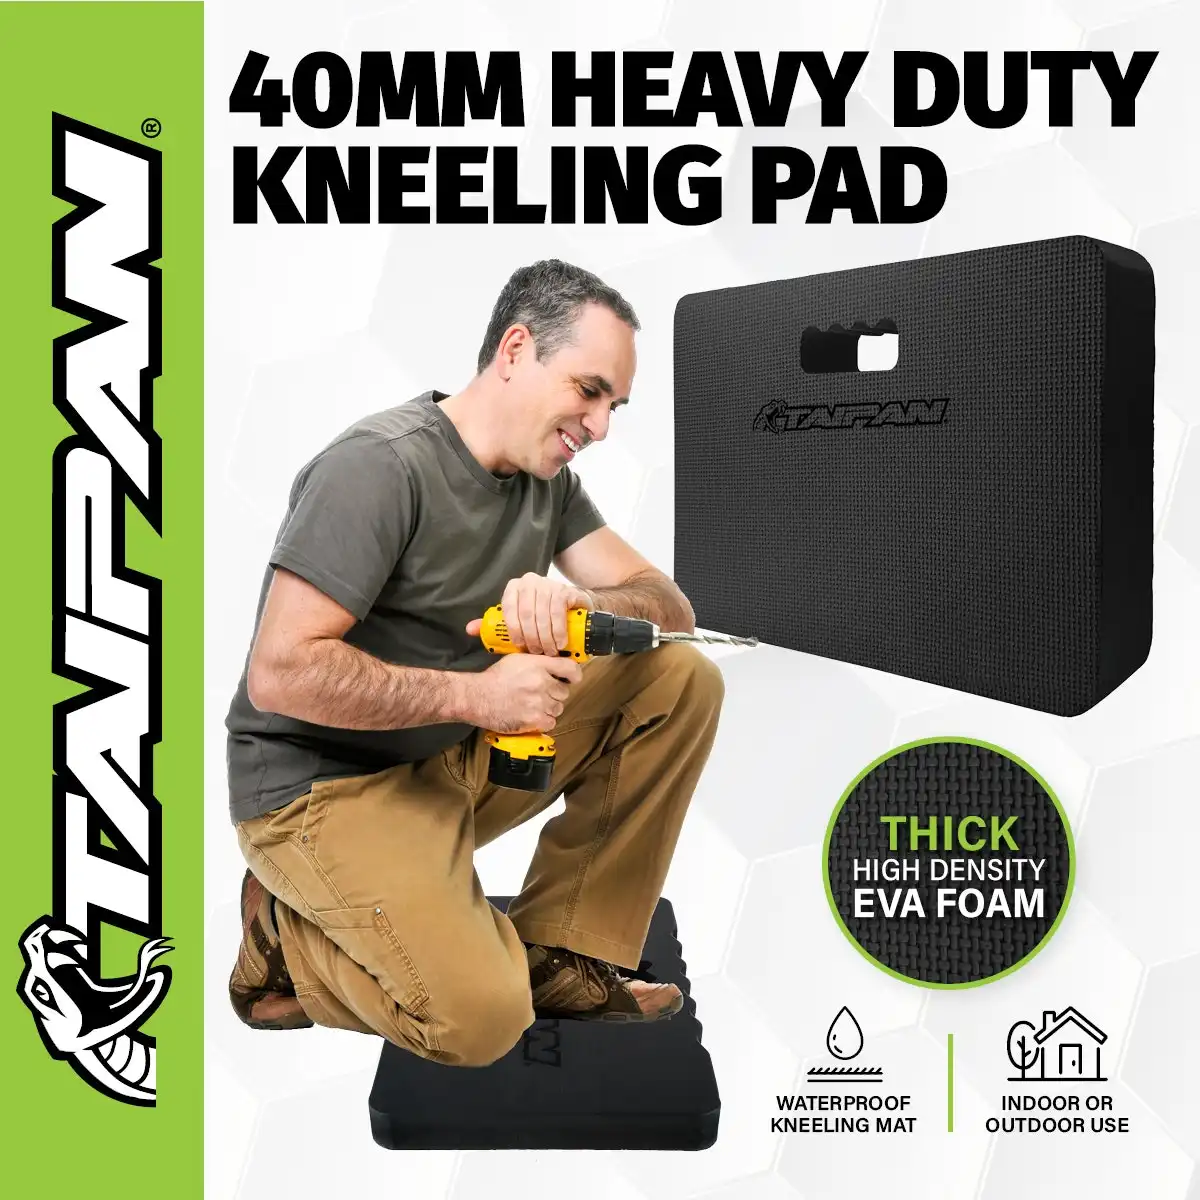 Taipan® Kneeling Pad Heavy Duty High Density EVA Foam Waterproof 440 x 300mm